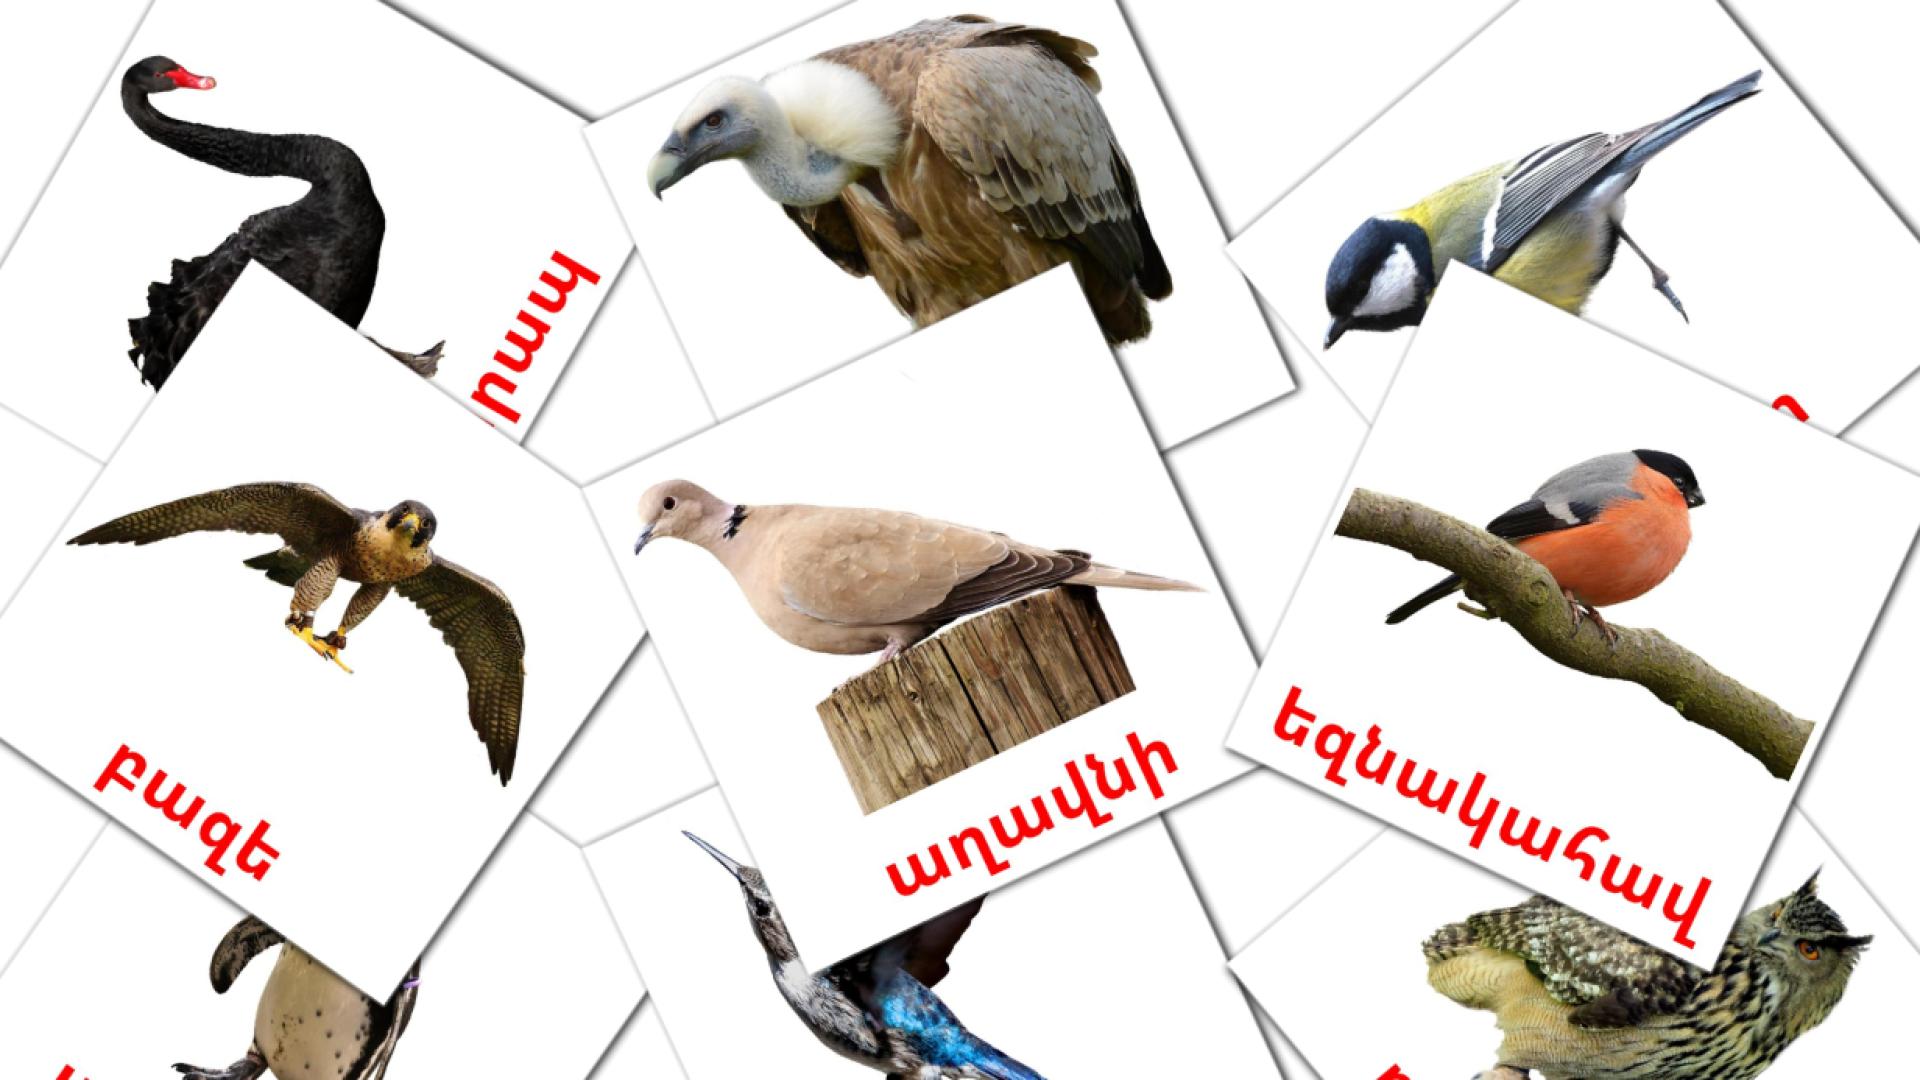 Дикие птицы - армянский словарь картинок